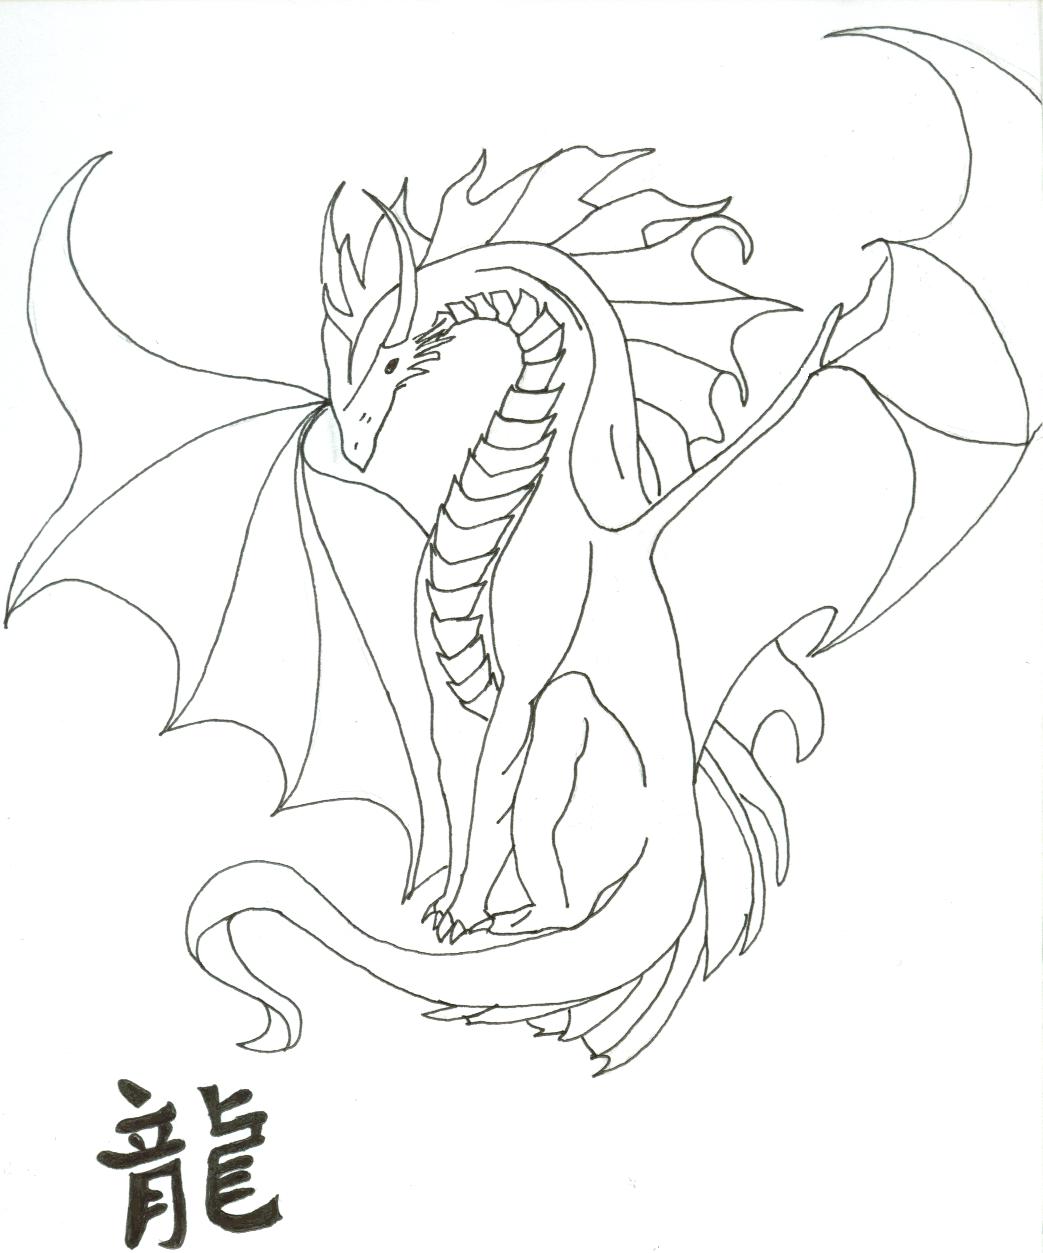 Dragon by psycho_girl